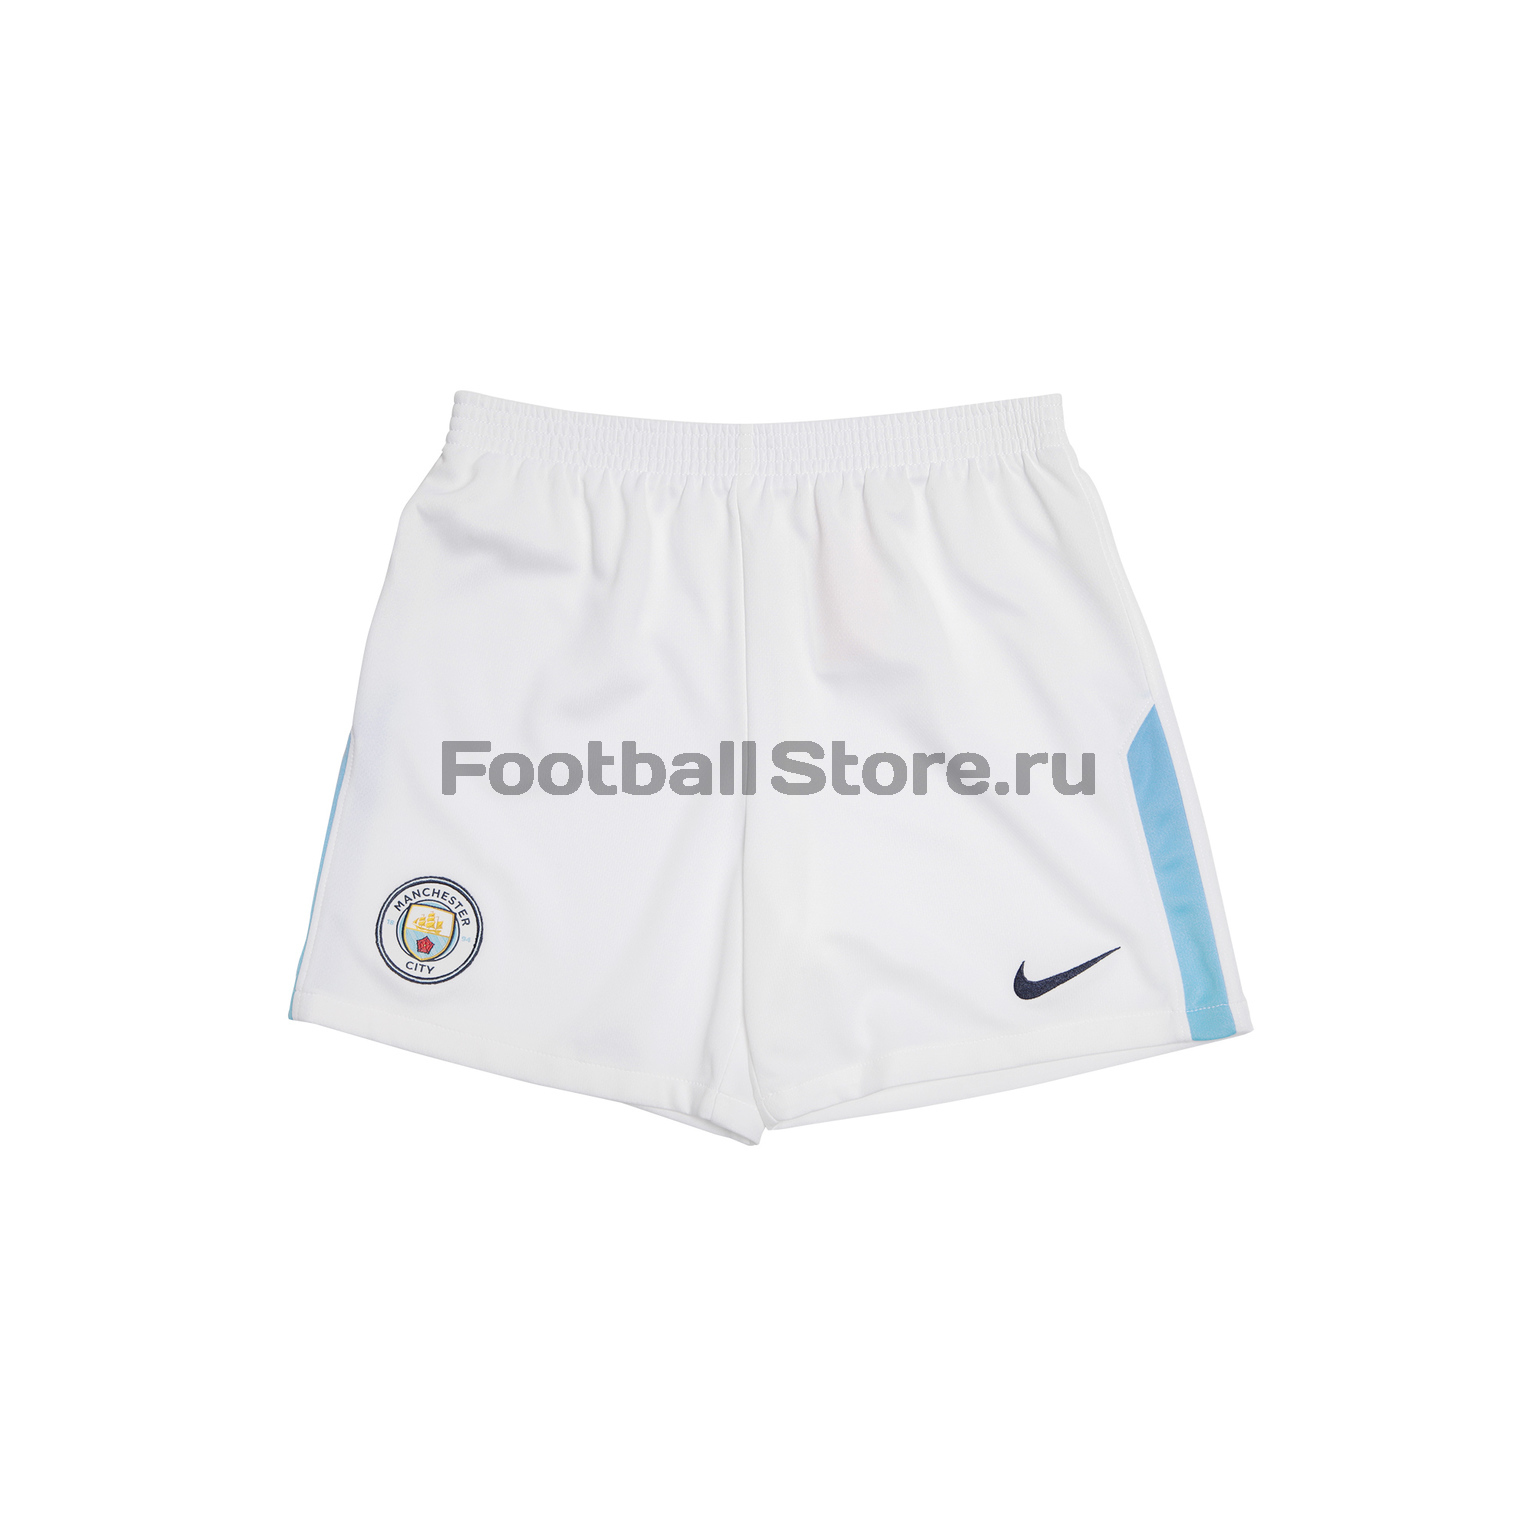 Комплект детской формы Nike Manchester City 847362-489